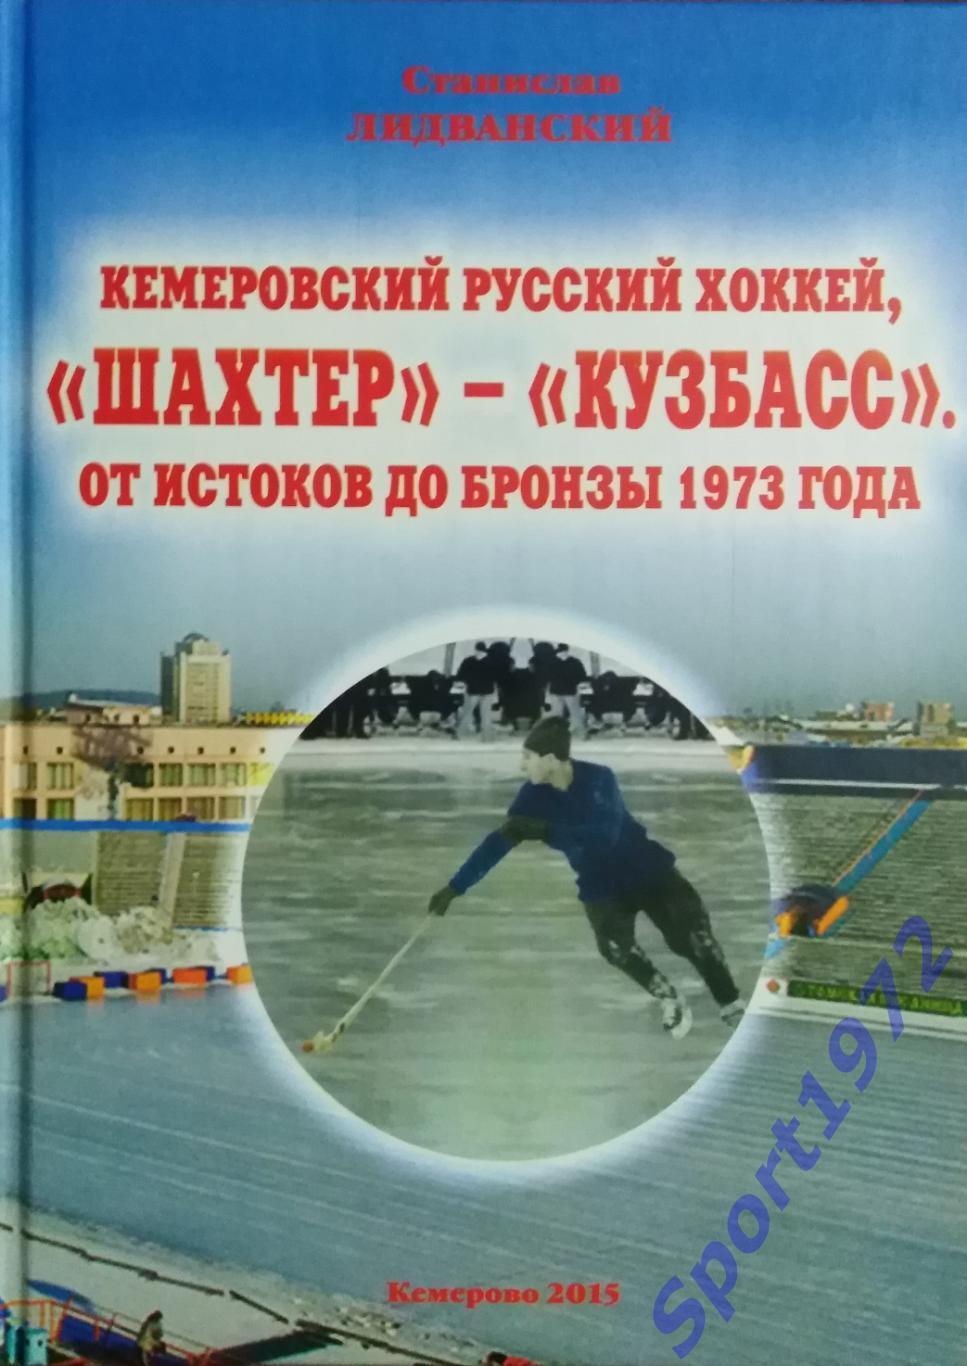 Кемеровский русский хоккей, Шахтёр - Кузбасс. От истоков до бронзы 1973 года